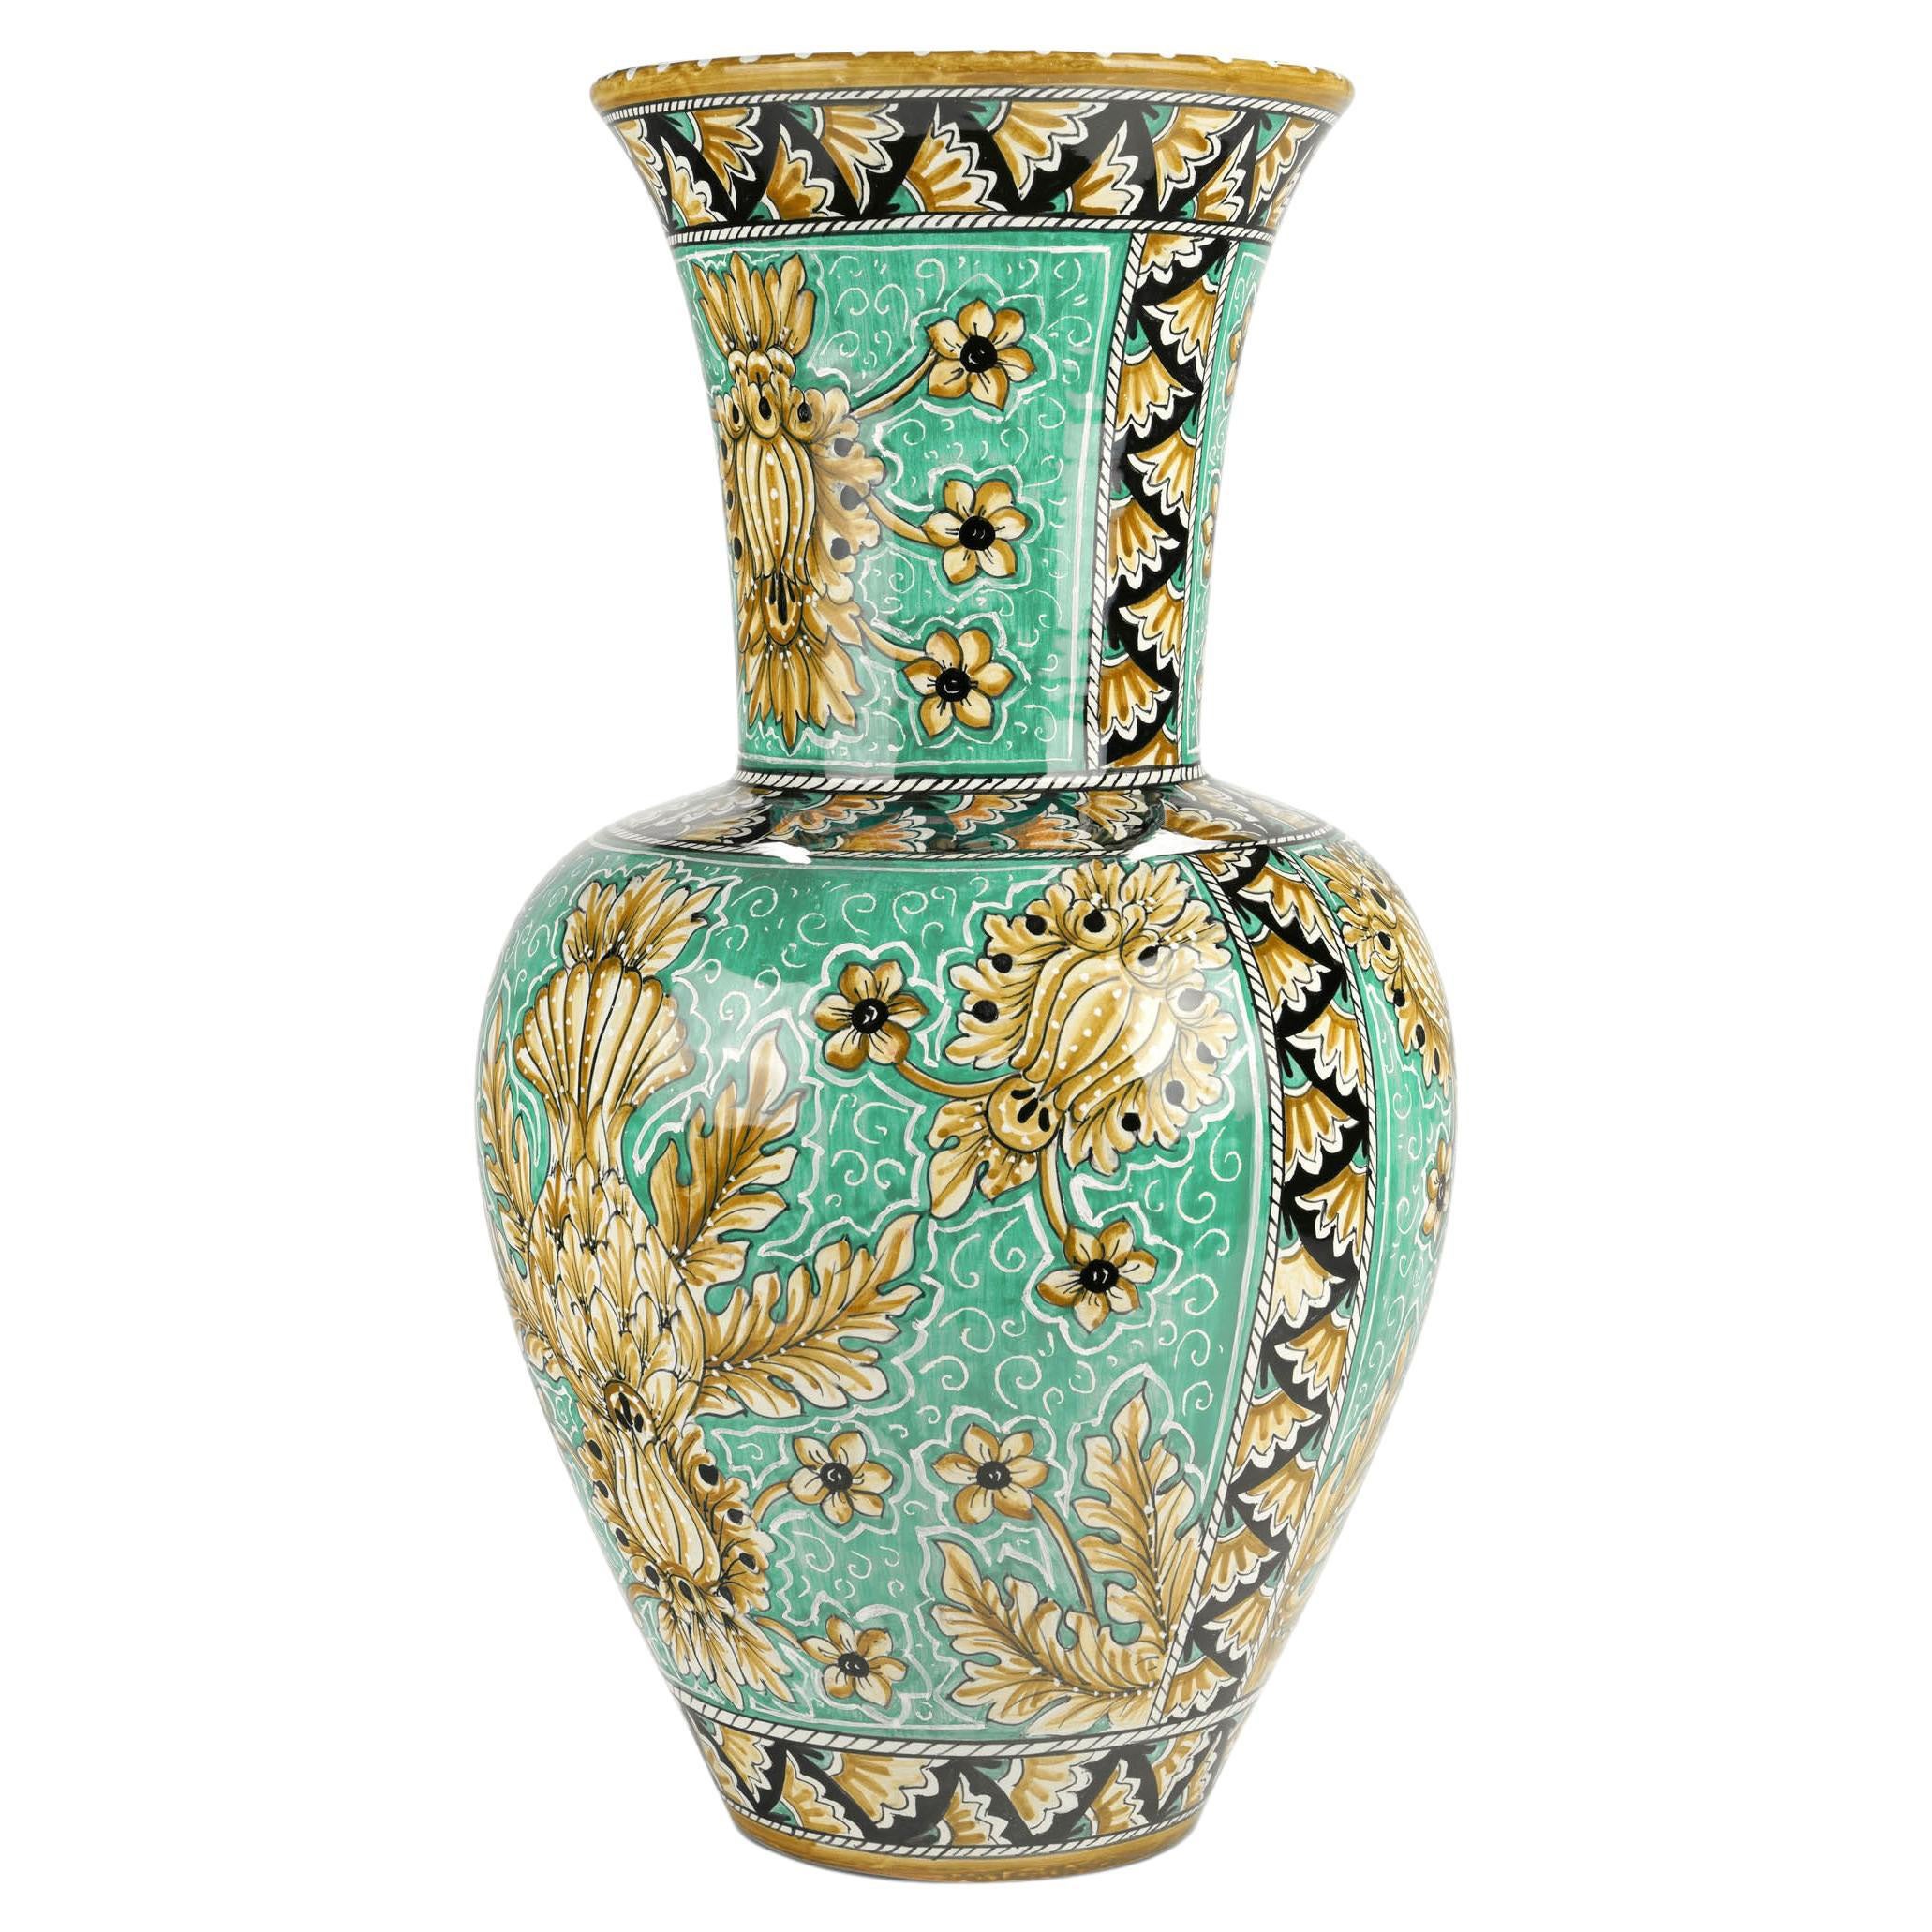 Vase Vessel Ceramic Centrepiece Ornament Aquamarine Majolica Flower Holder Italy